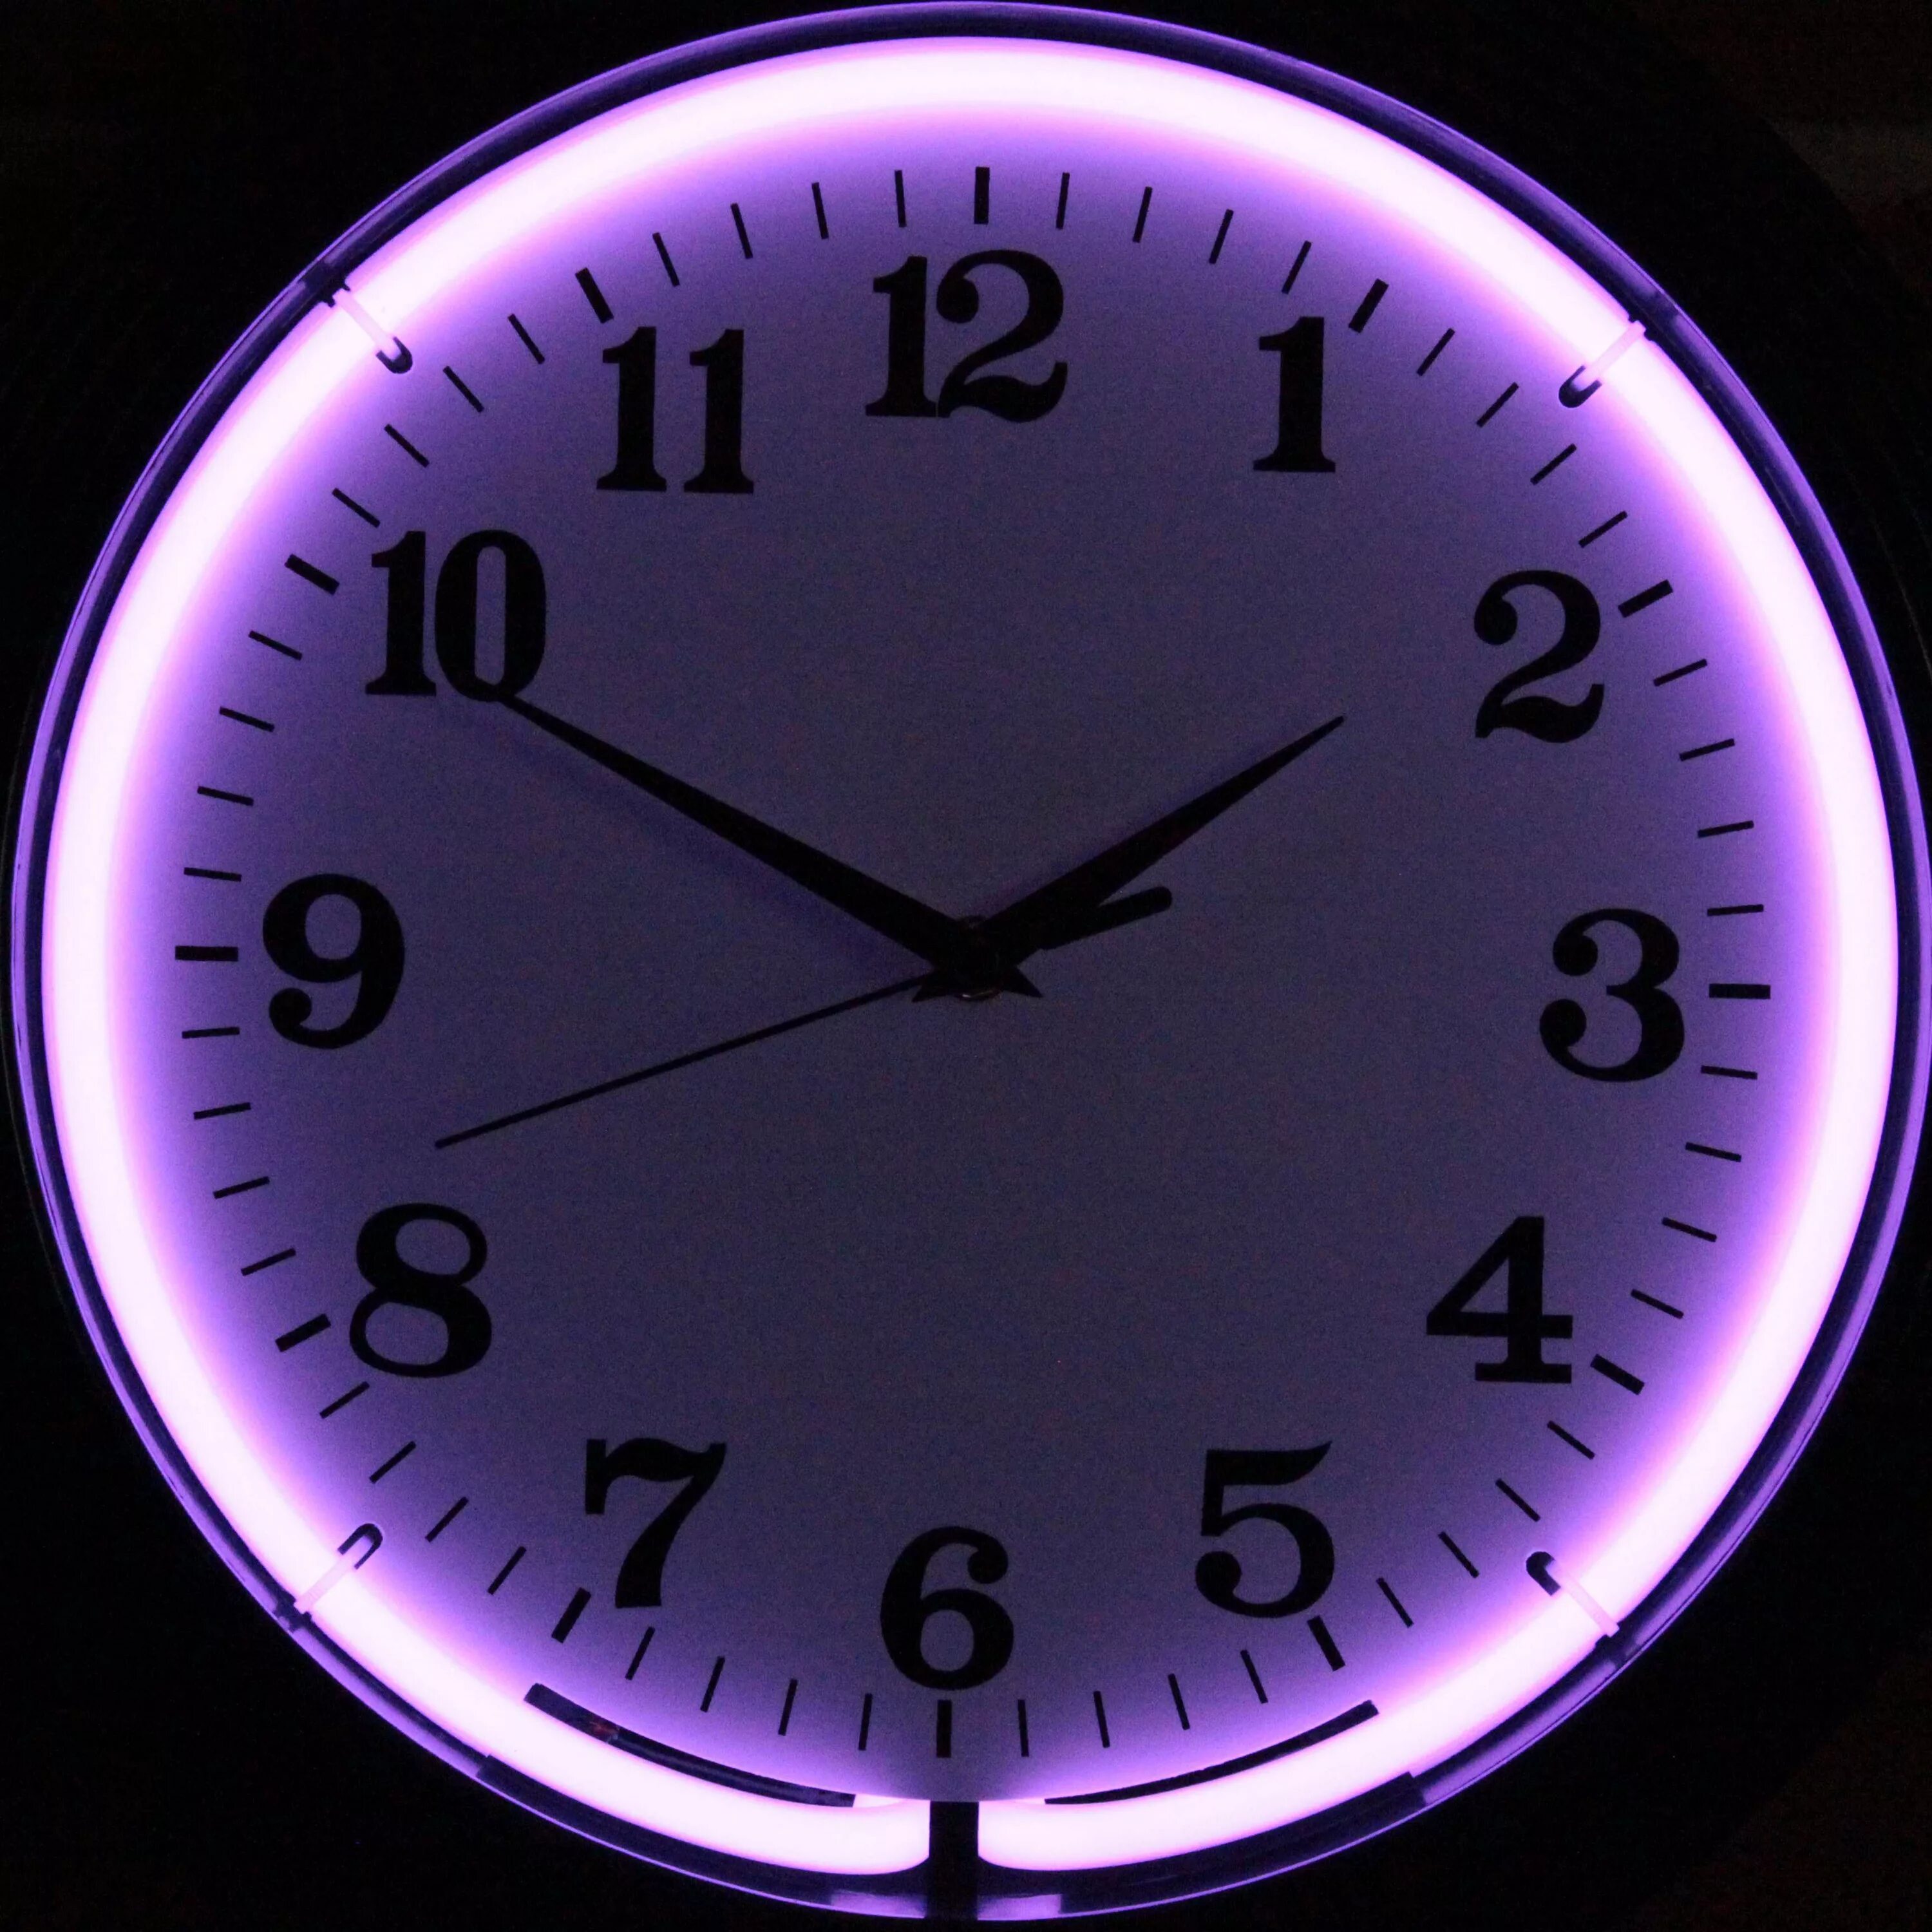 Часы фиолетовые. Красивые часы. Часы круглые. Часы циферблат. 13 50 на часах